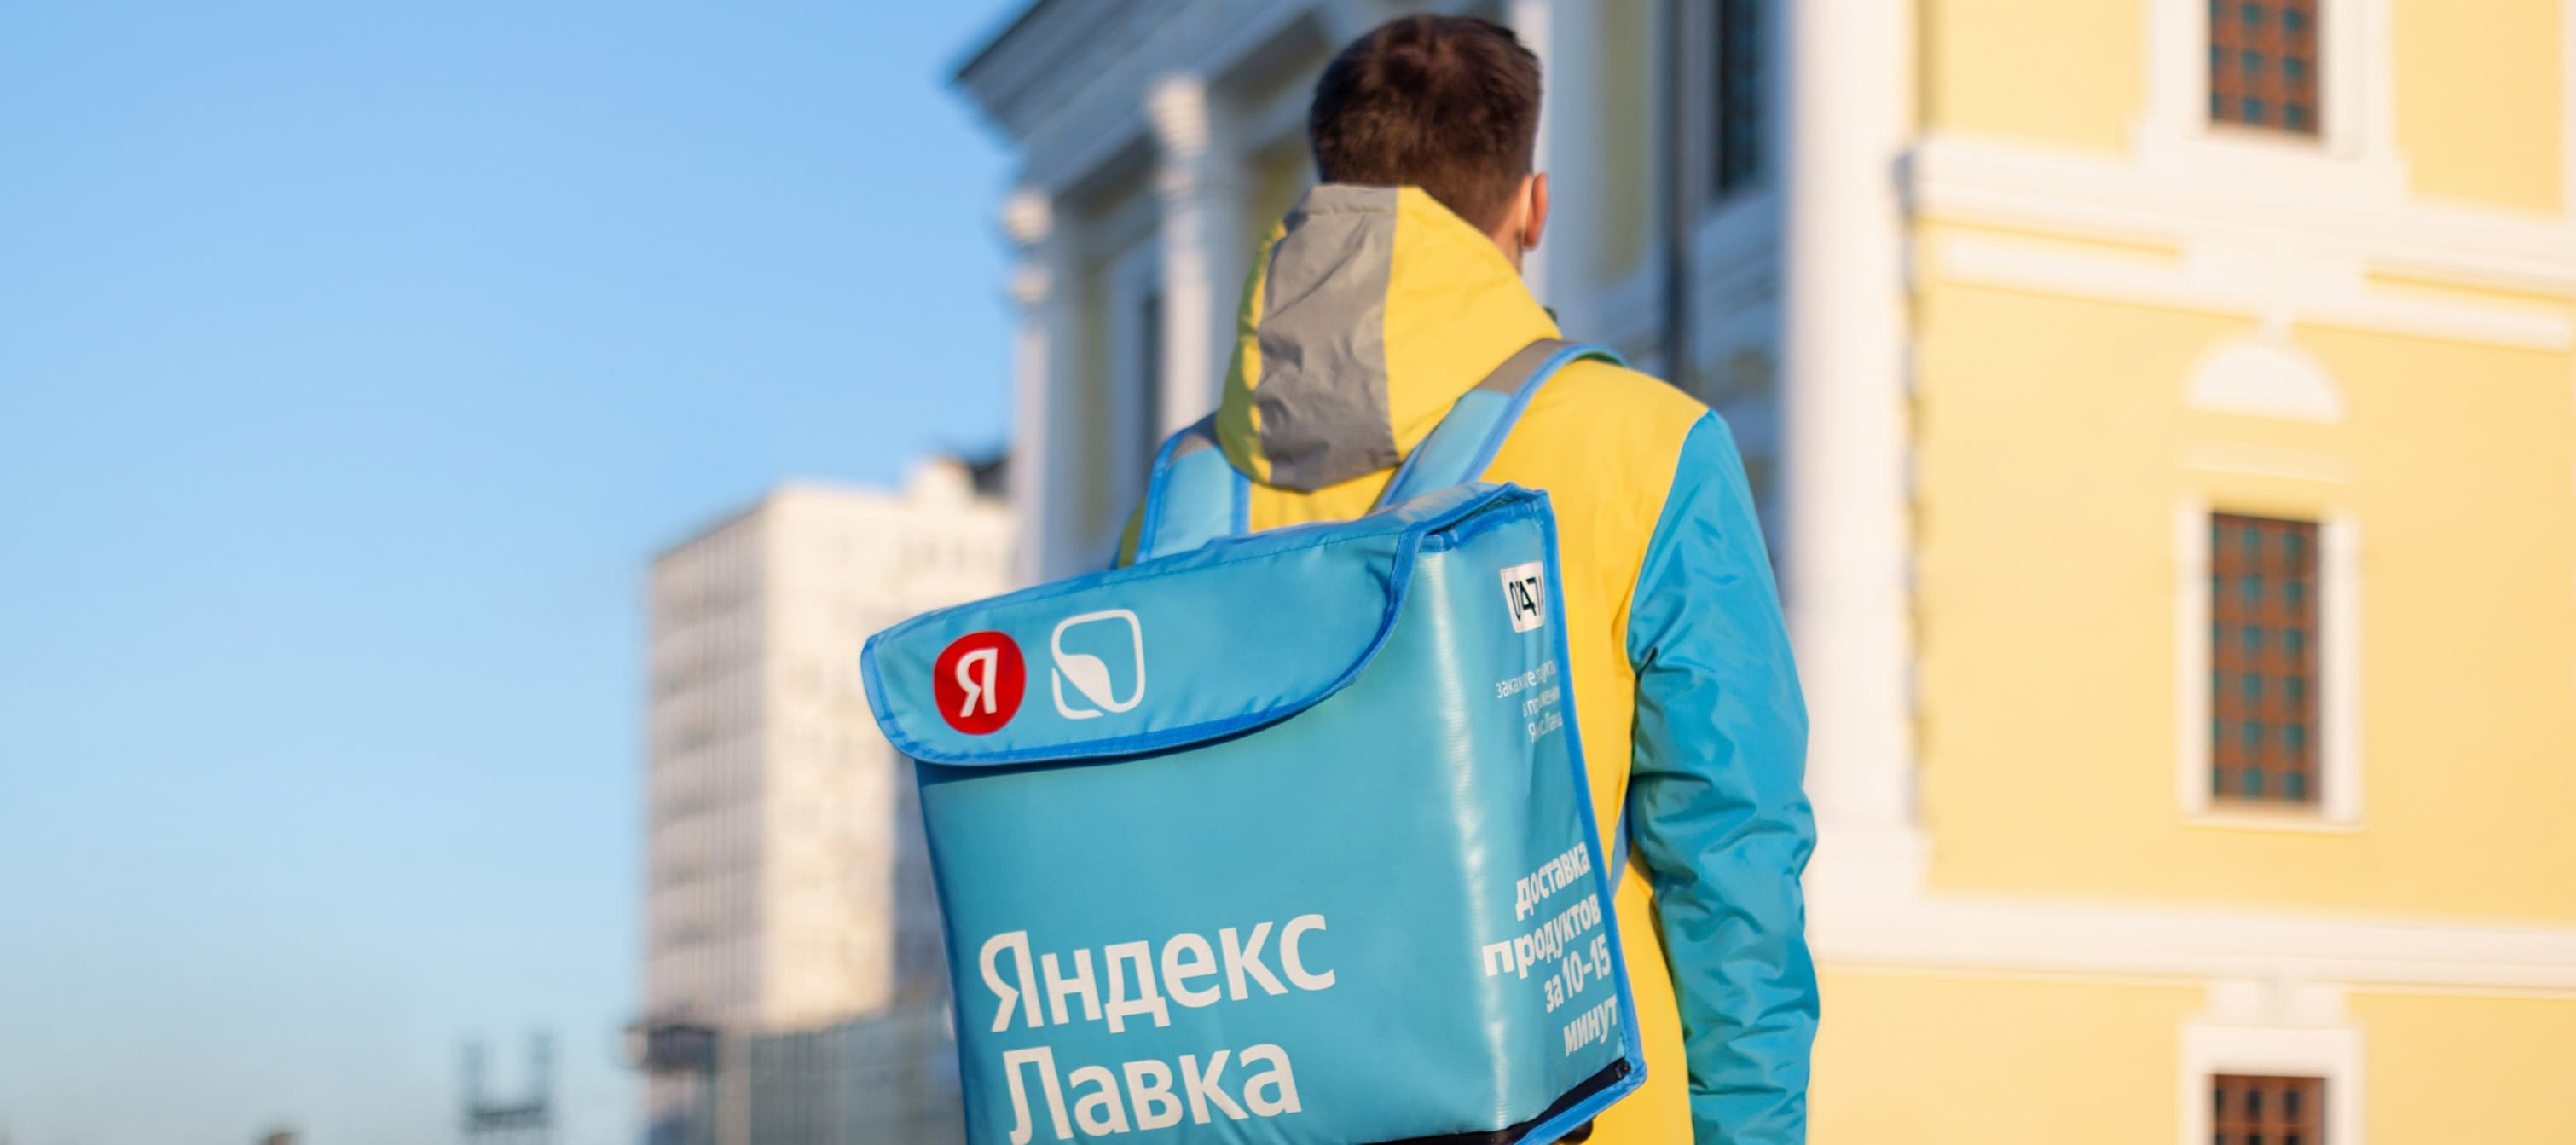 Фото новости: "«Яндекс.Лавка» впервые получила прибыль"